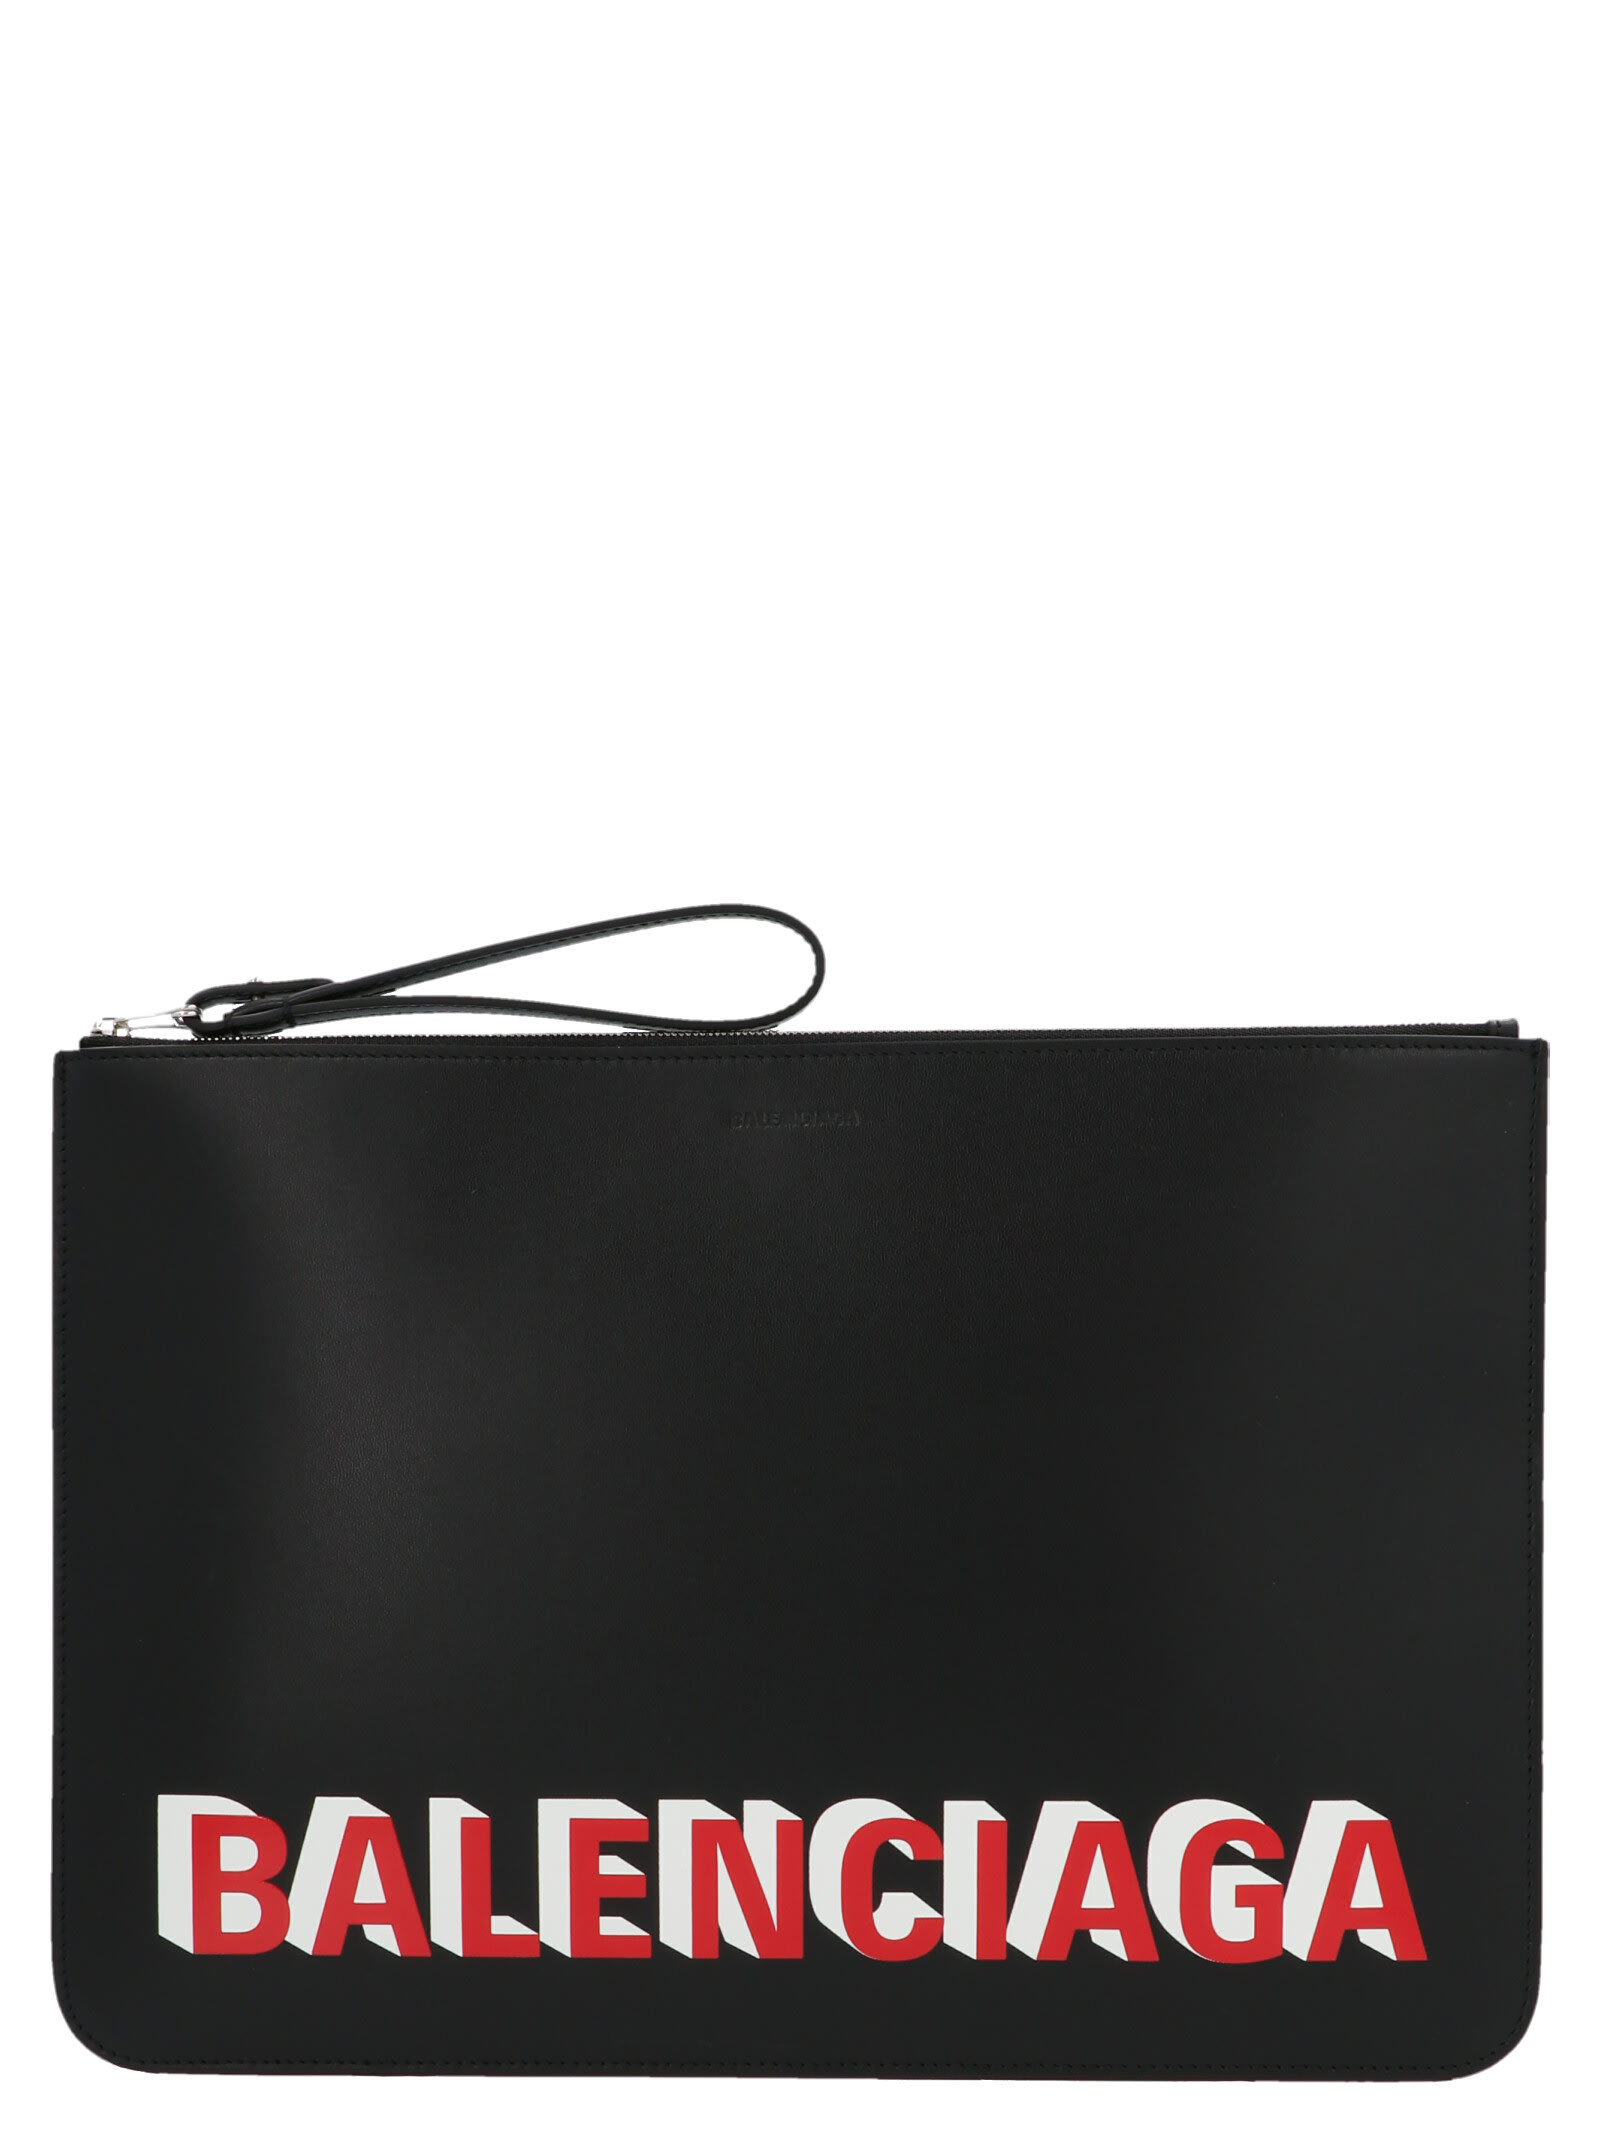 Balenciaga cash Handle Pouch Bag